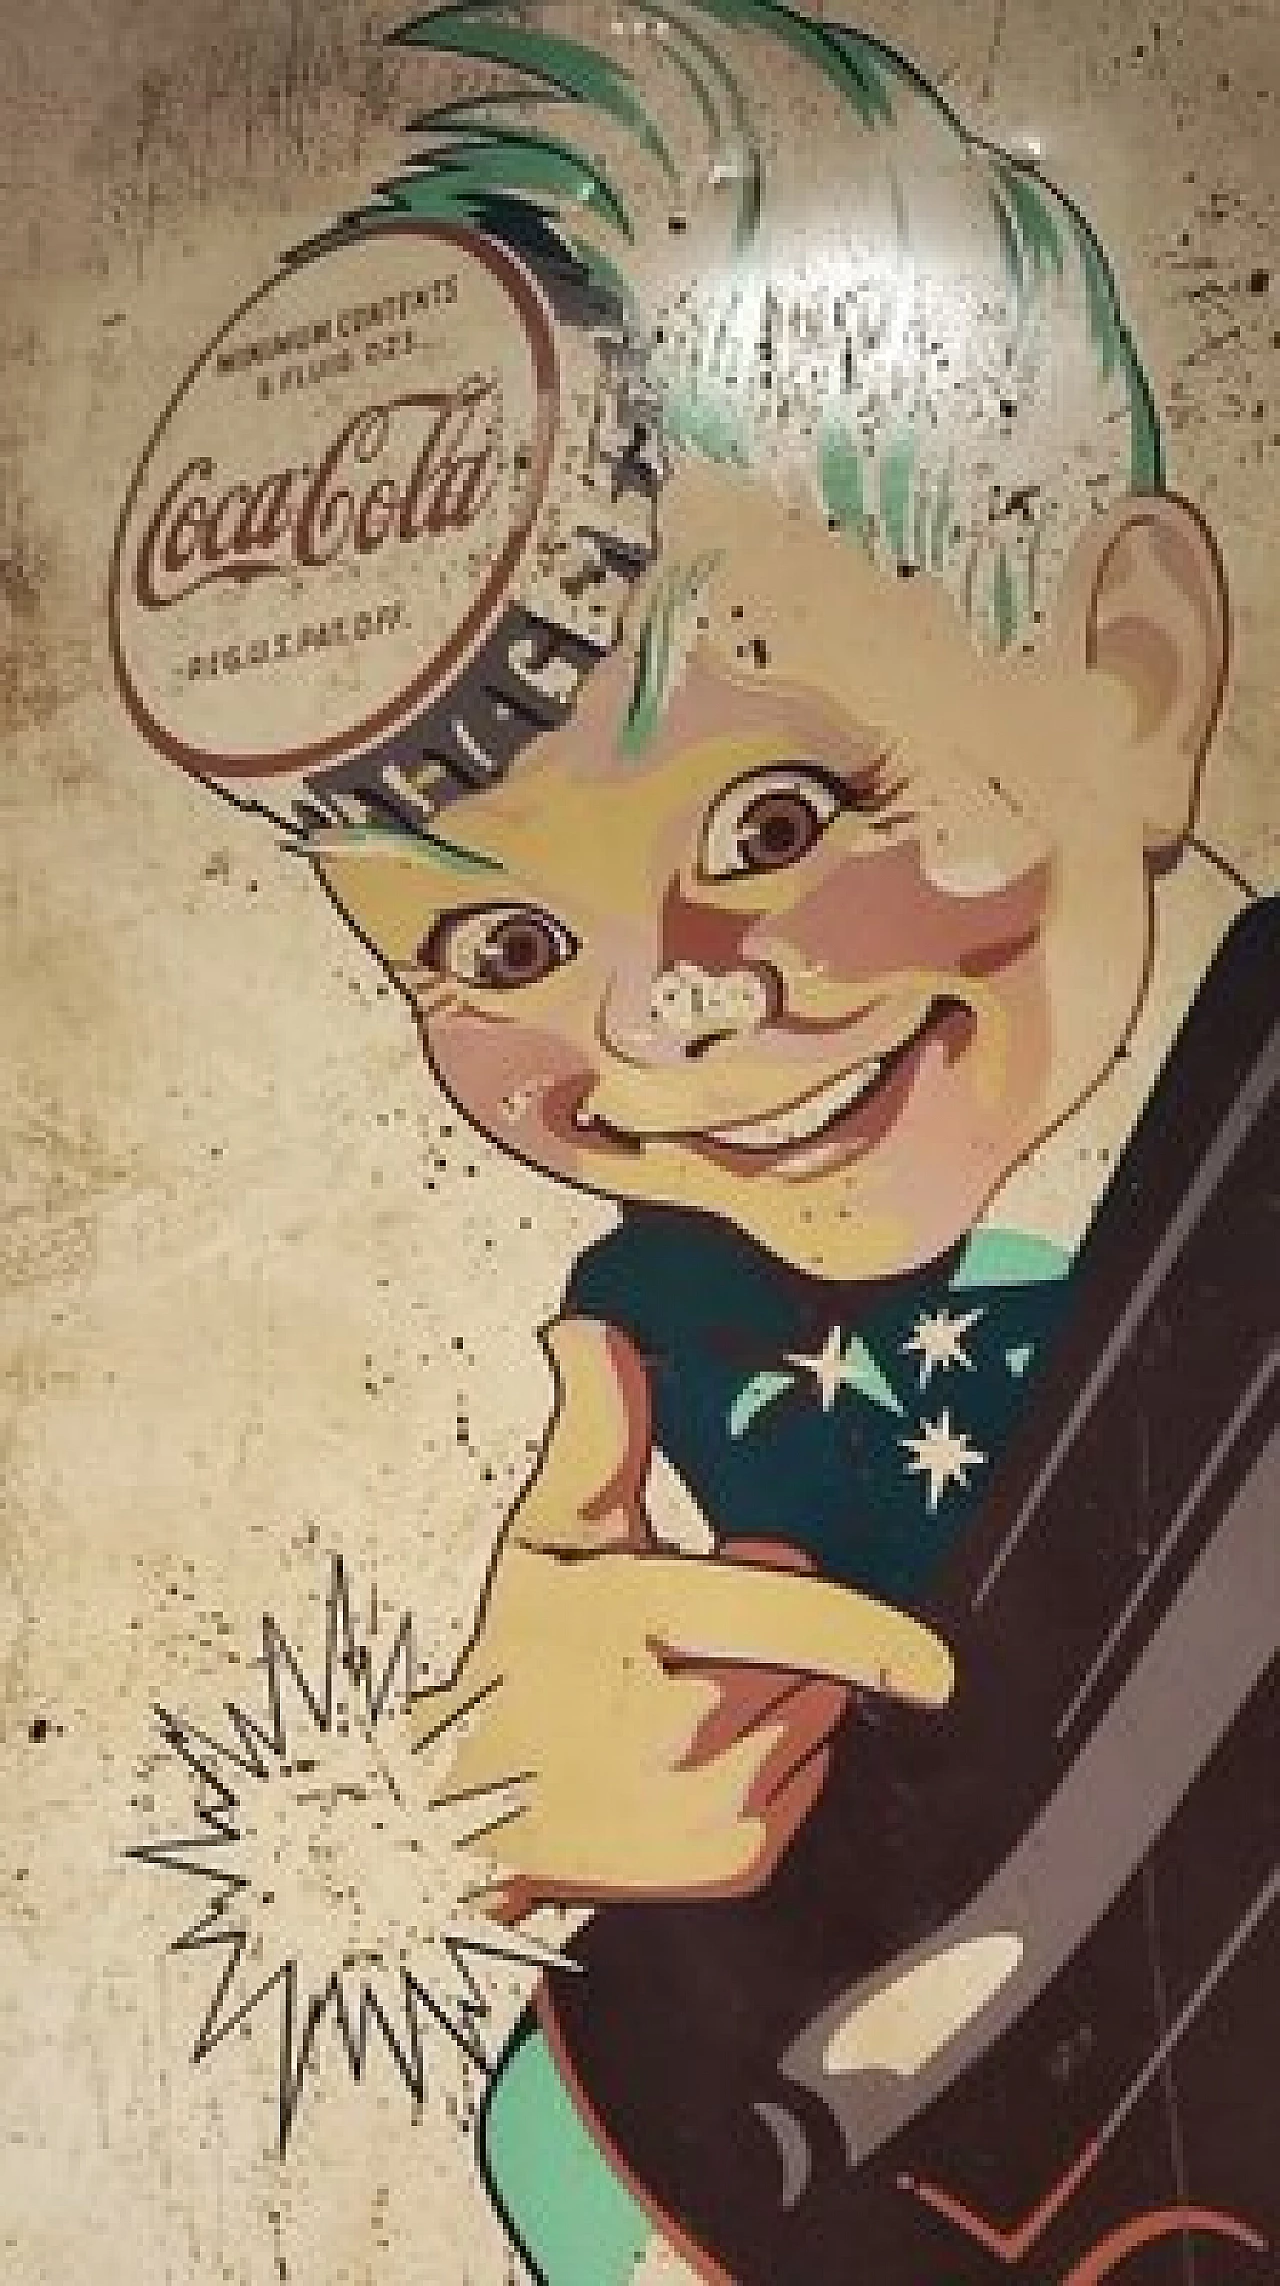 Coca Cola sign with Sprite boy, 1940s 2